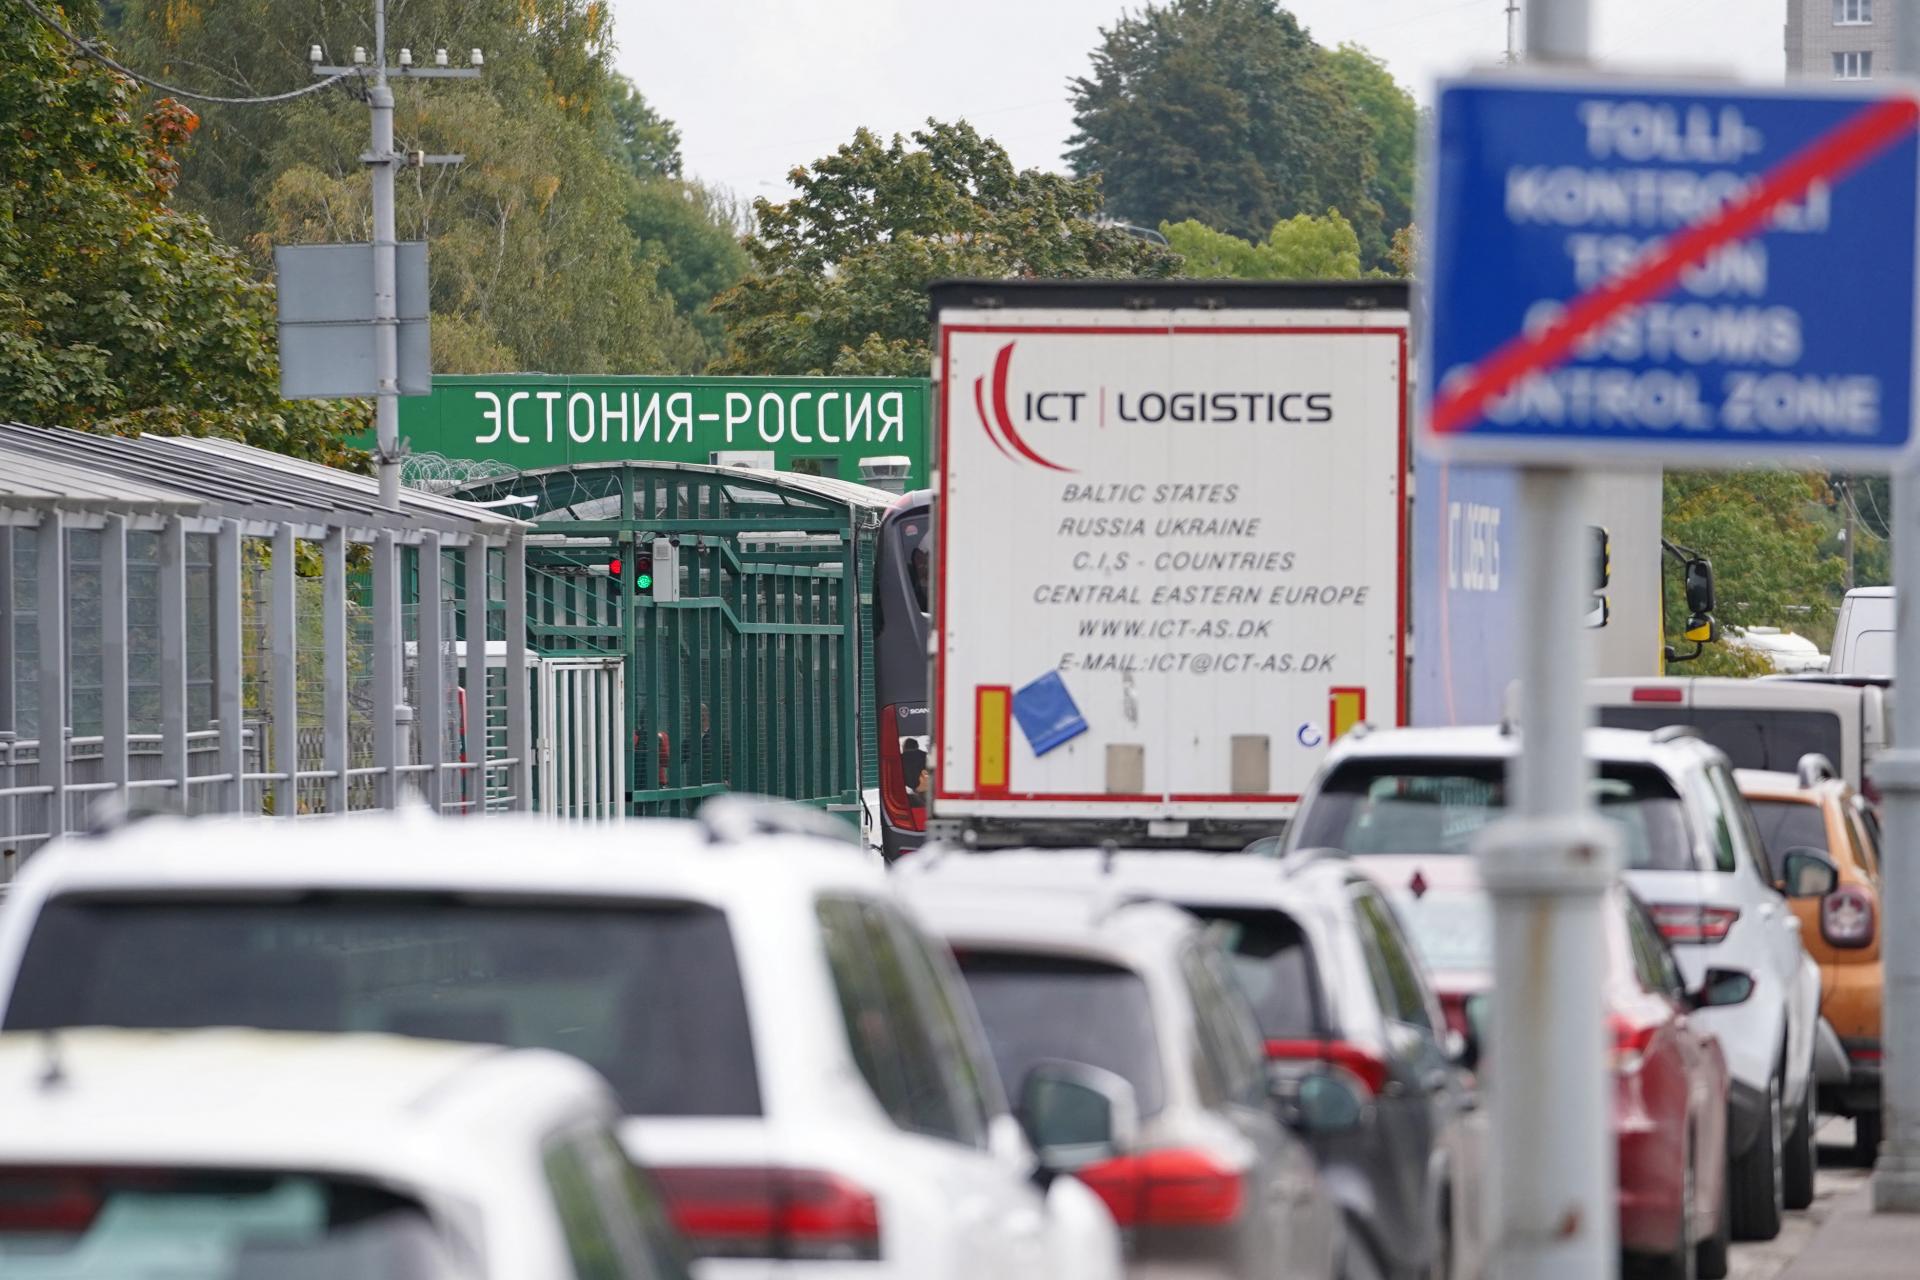 Pobaltské štáty zakázali vjazd ruským autám. Rasizmus, reaguje Kremeľ